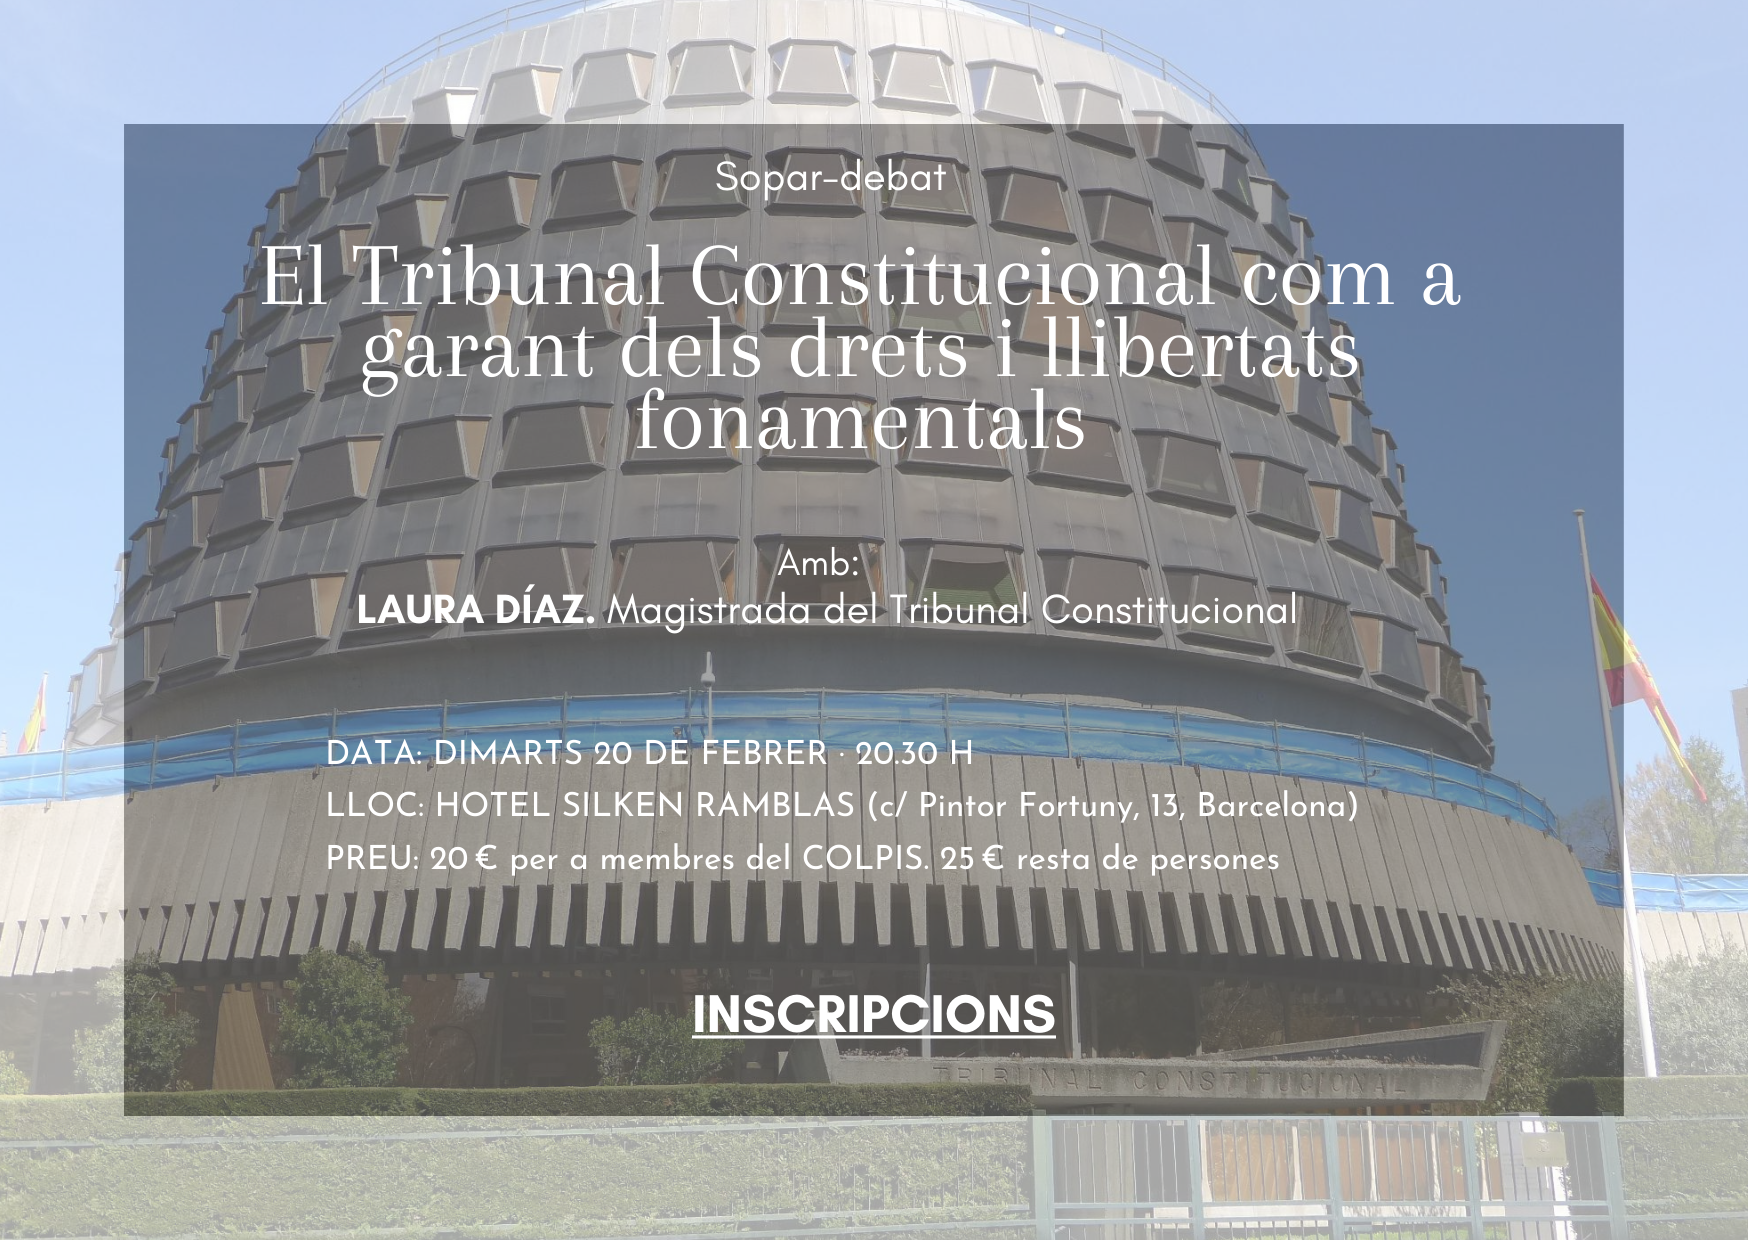 SOPAR DEBAT: EL TRIBUNAL CONSTITUCIONAL COM A GARANT DELS DRETS I LLIBERTATS FONAMENTALS